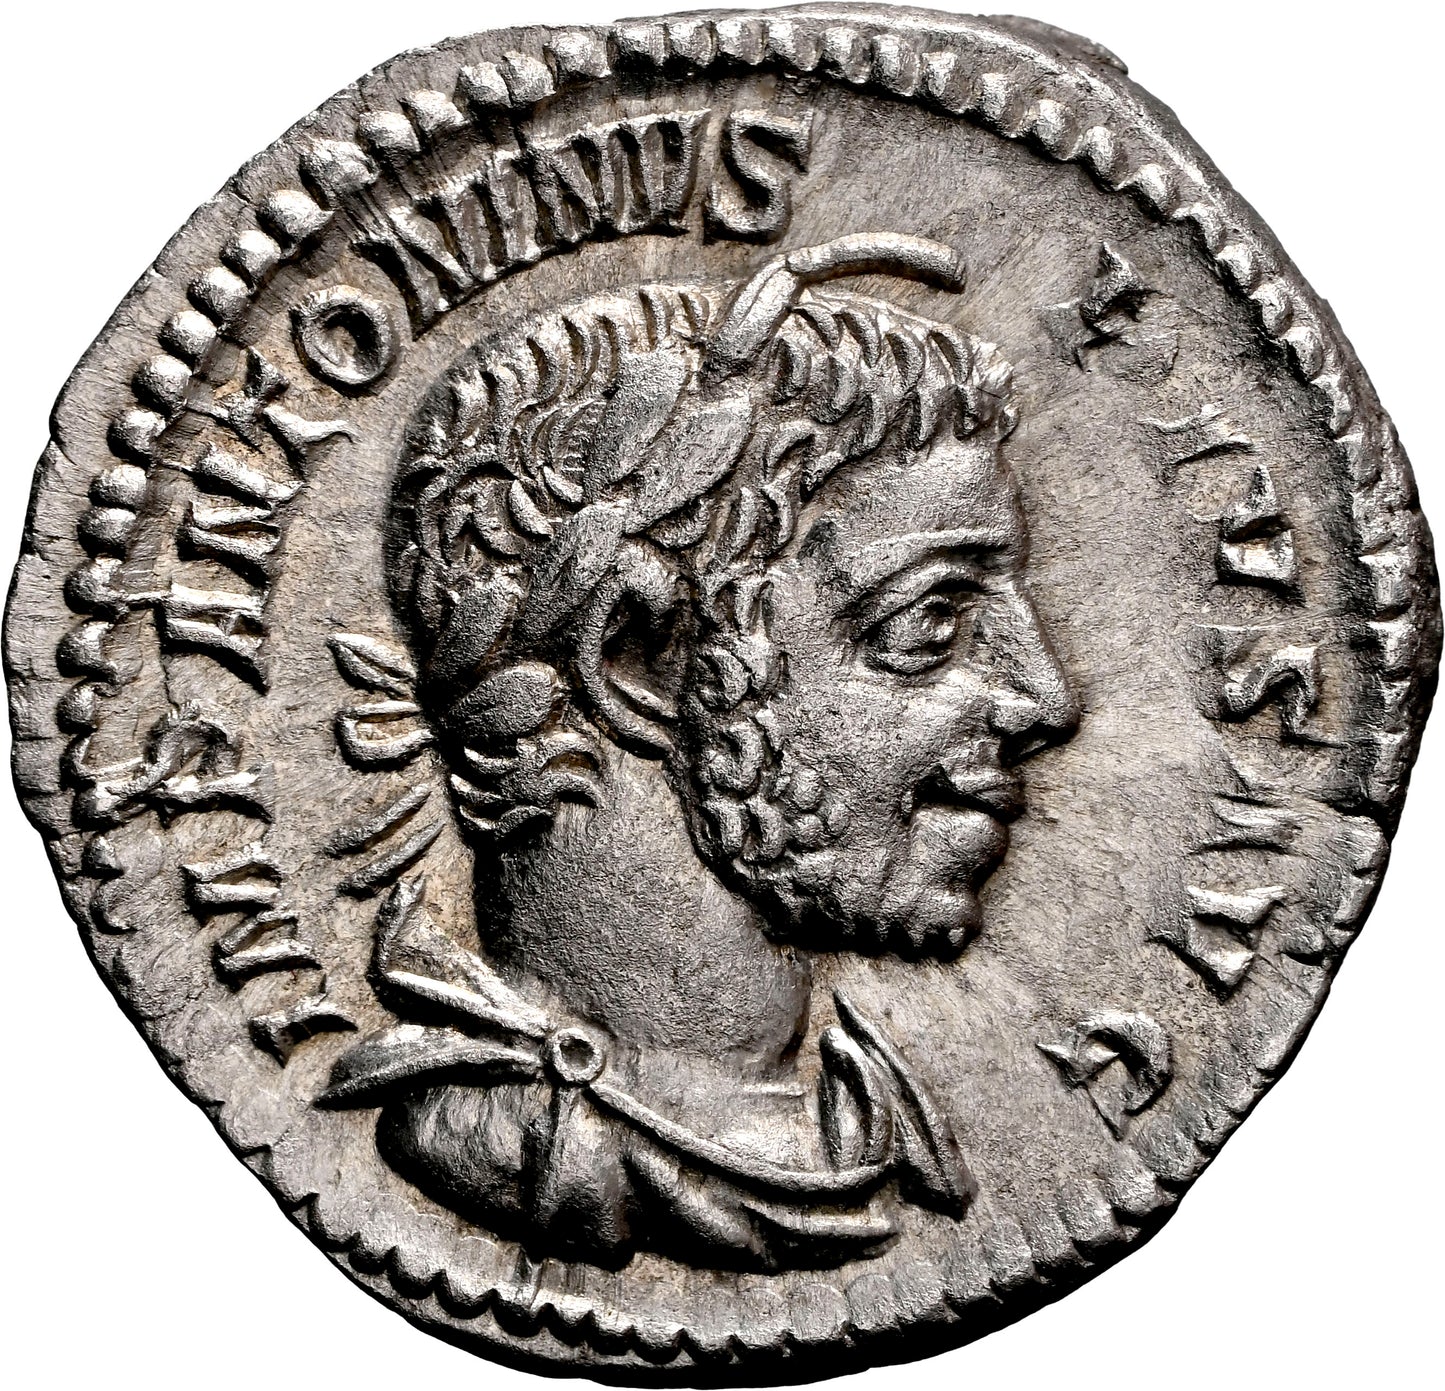 Roman Empire - Elagabalus - Silver Denarius - NGC Ch AU - RIC:146